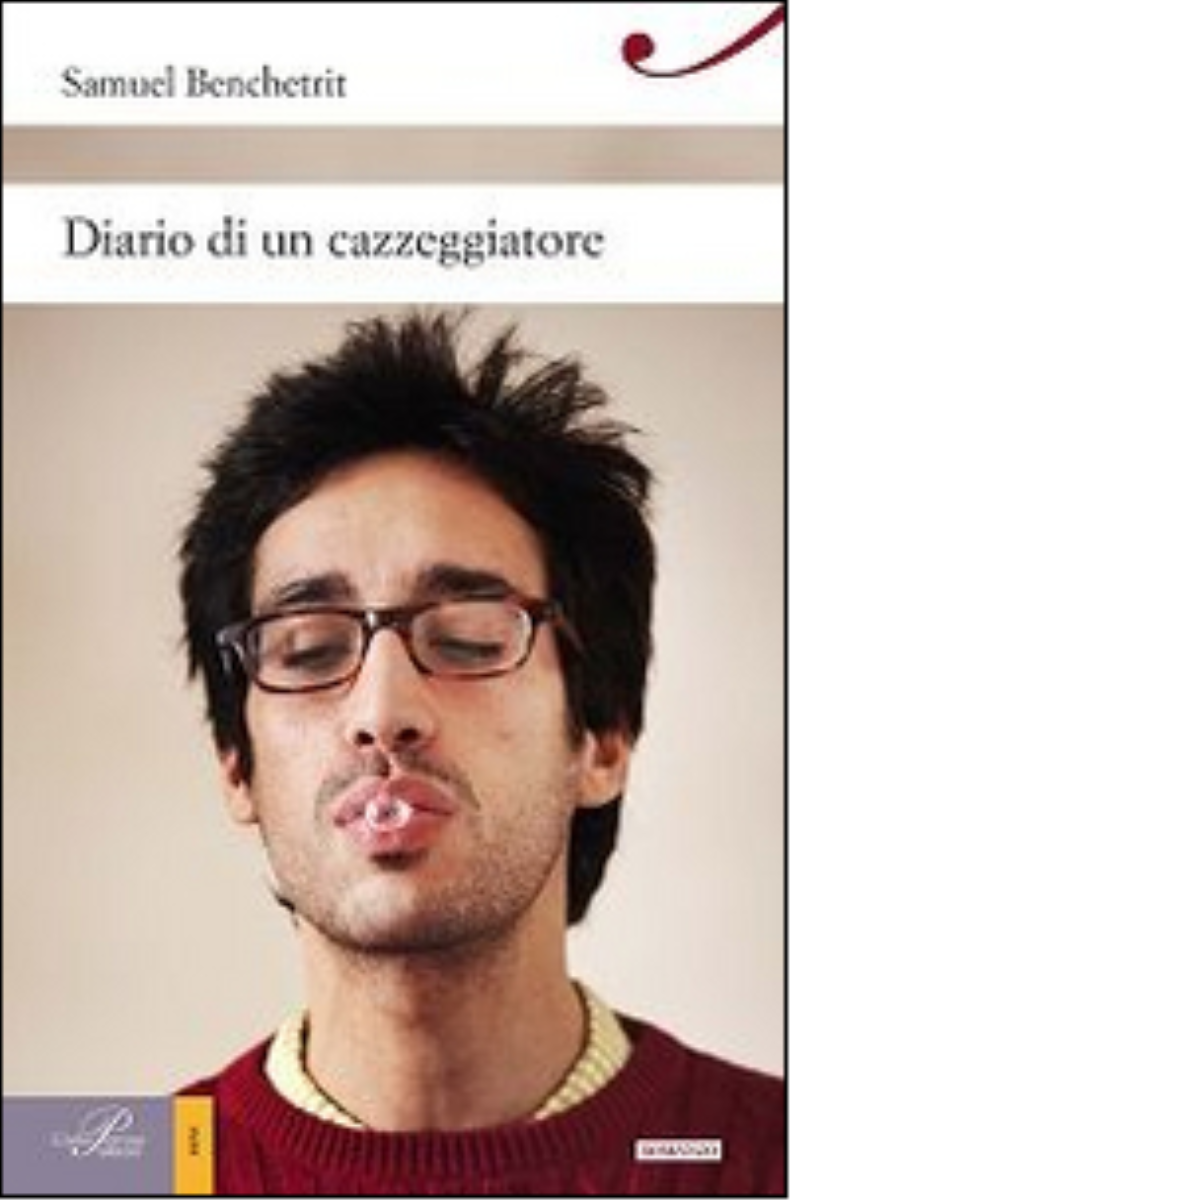 Diario di un cazzeggiatore - Samuel Benchetrit - Perrone editore, 2014 libro usato